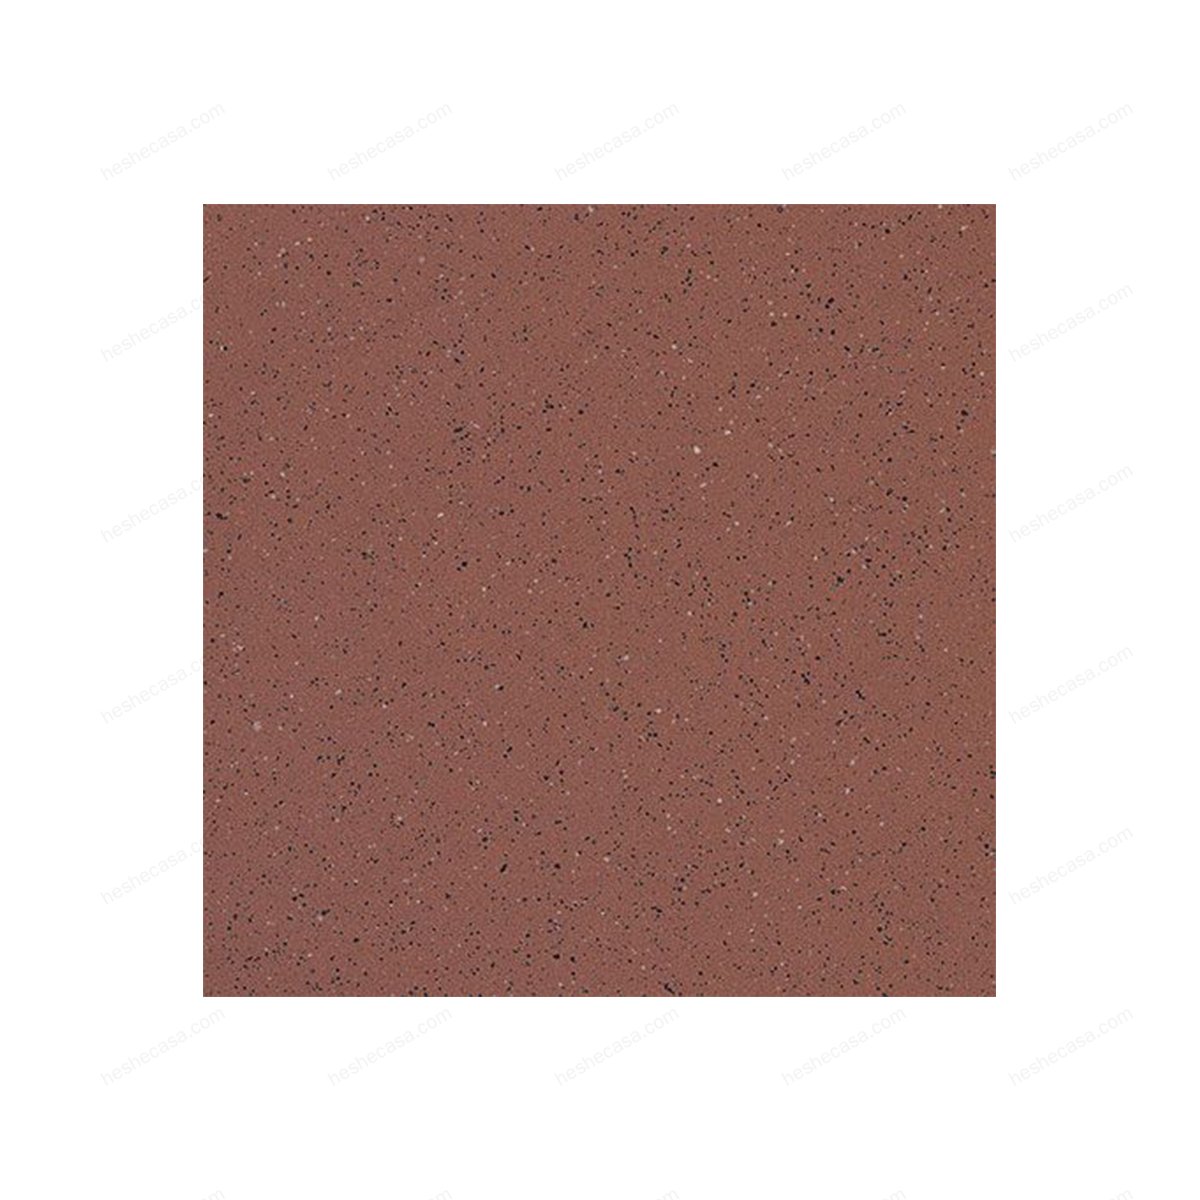 Granito-1瓷砖